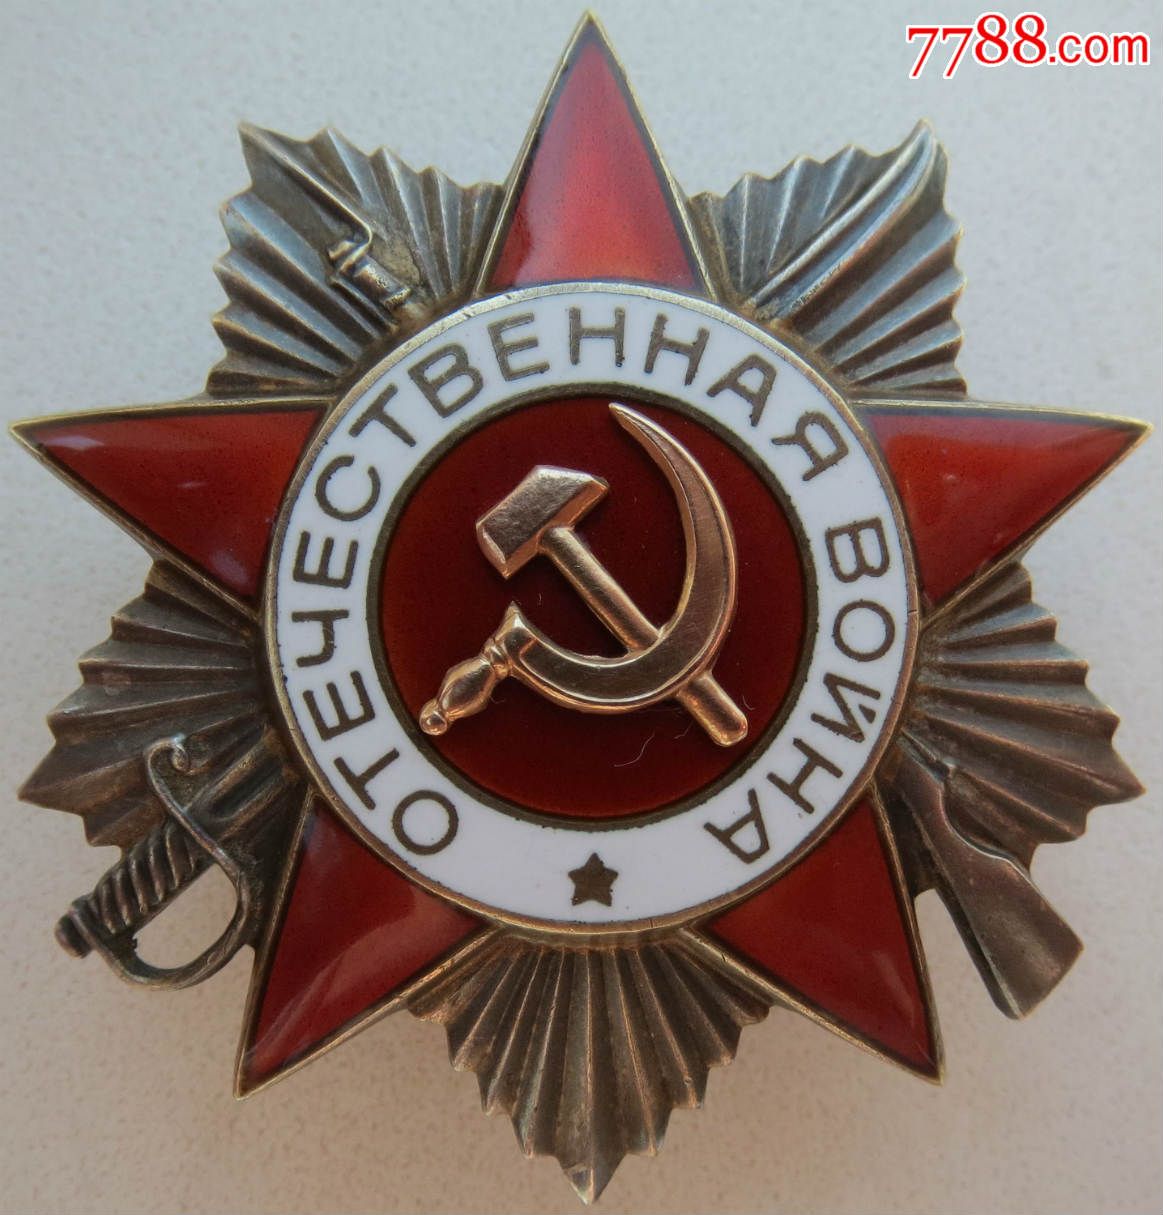 苏联勋章二级卫国勋章后期版本